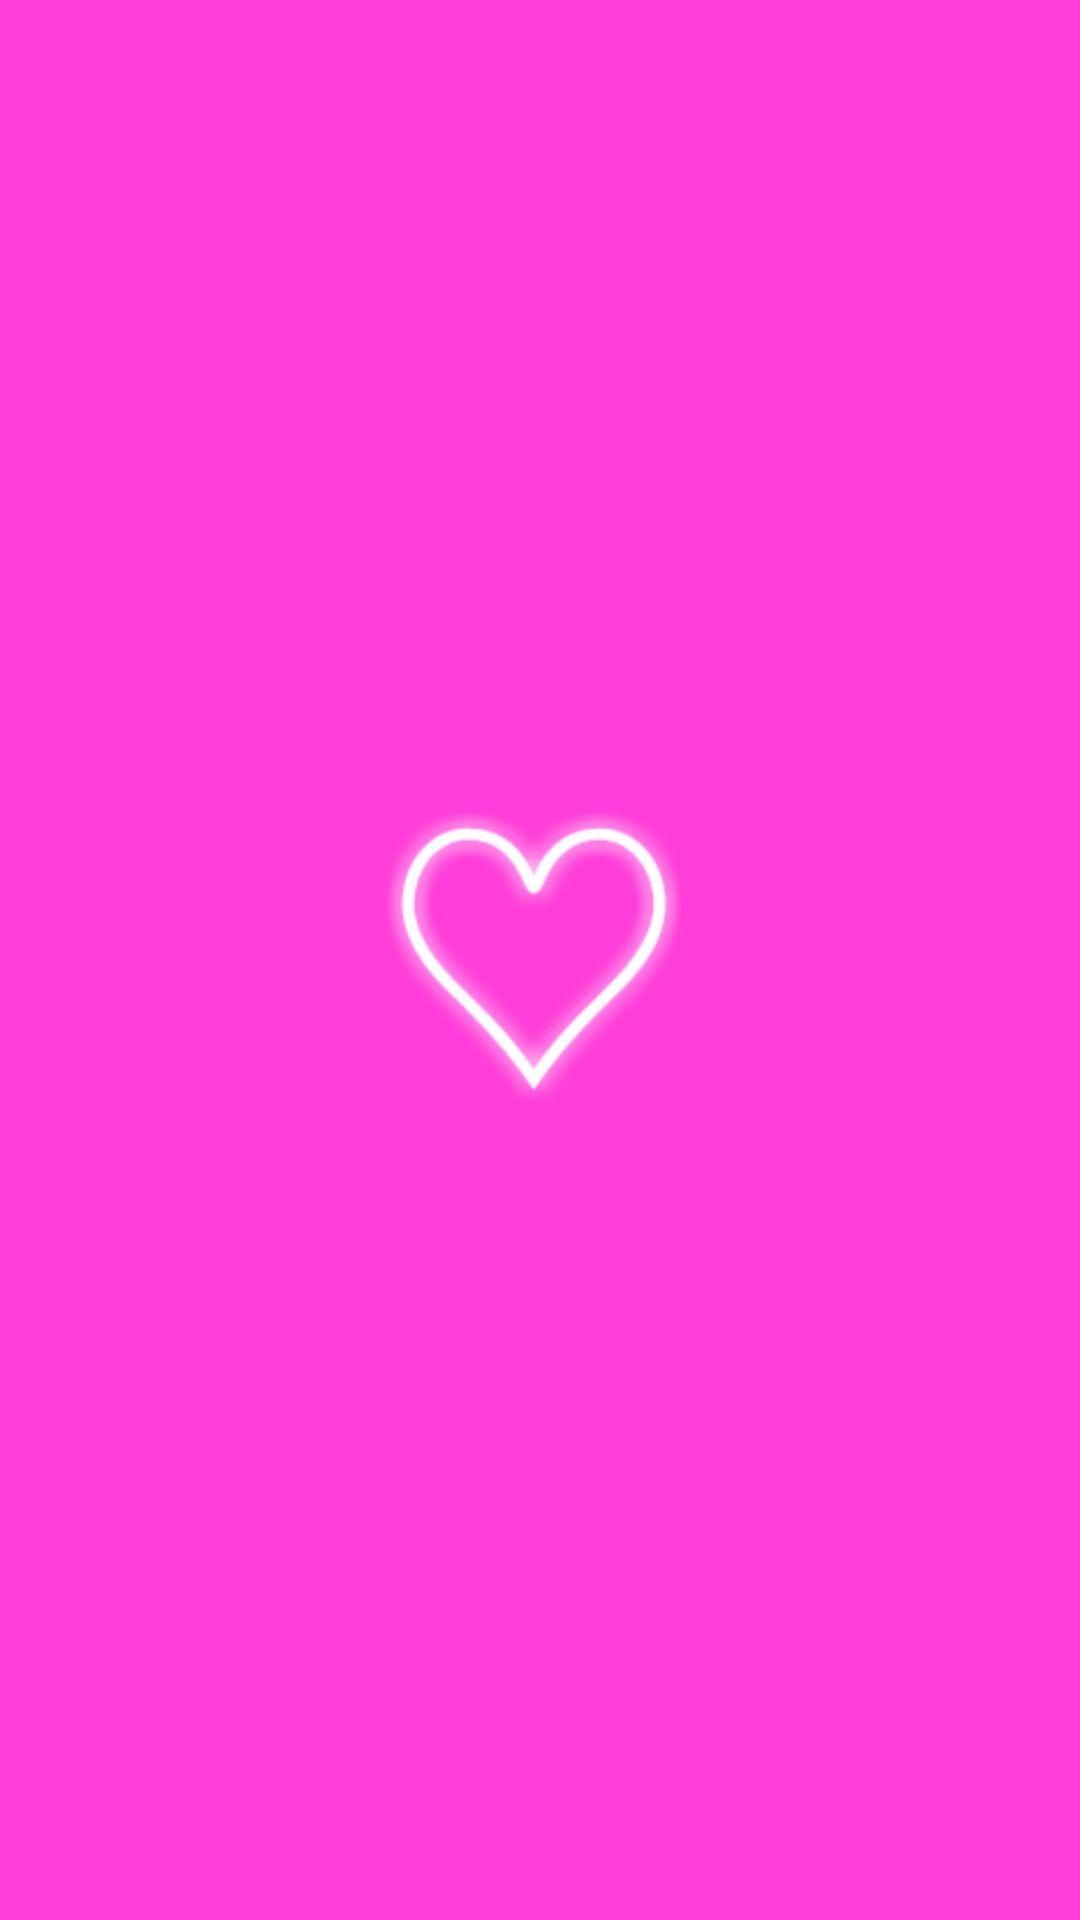 Hình nền neon hồng: Tình yêu và sự quyến rũ sẽ được thể hiện một cách thật hoàn hảo trong hình nền neon hồng tuyệt đẹp này. Những đường neon đáng yêu kết hợp cùng gam màu hồng tươi tắn sẽ khiến bạn mê mẩn ngay từ cái nhìn đầu tiên. Hãy cùng xem những hình nền đỉnh cao này nhé!